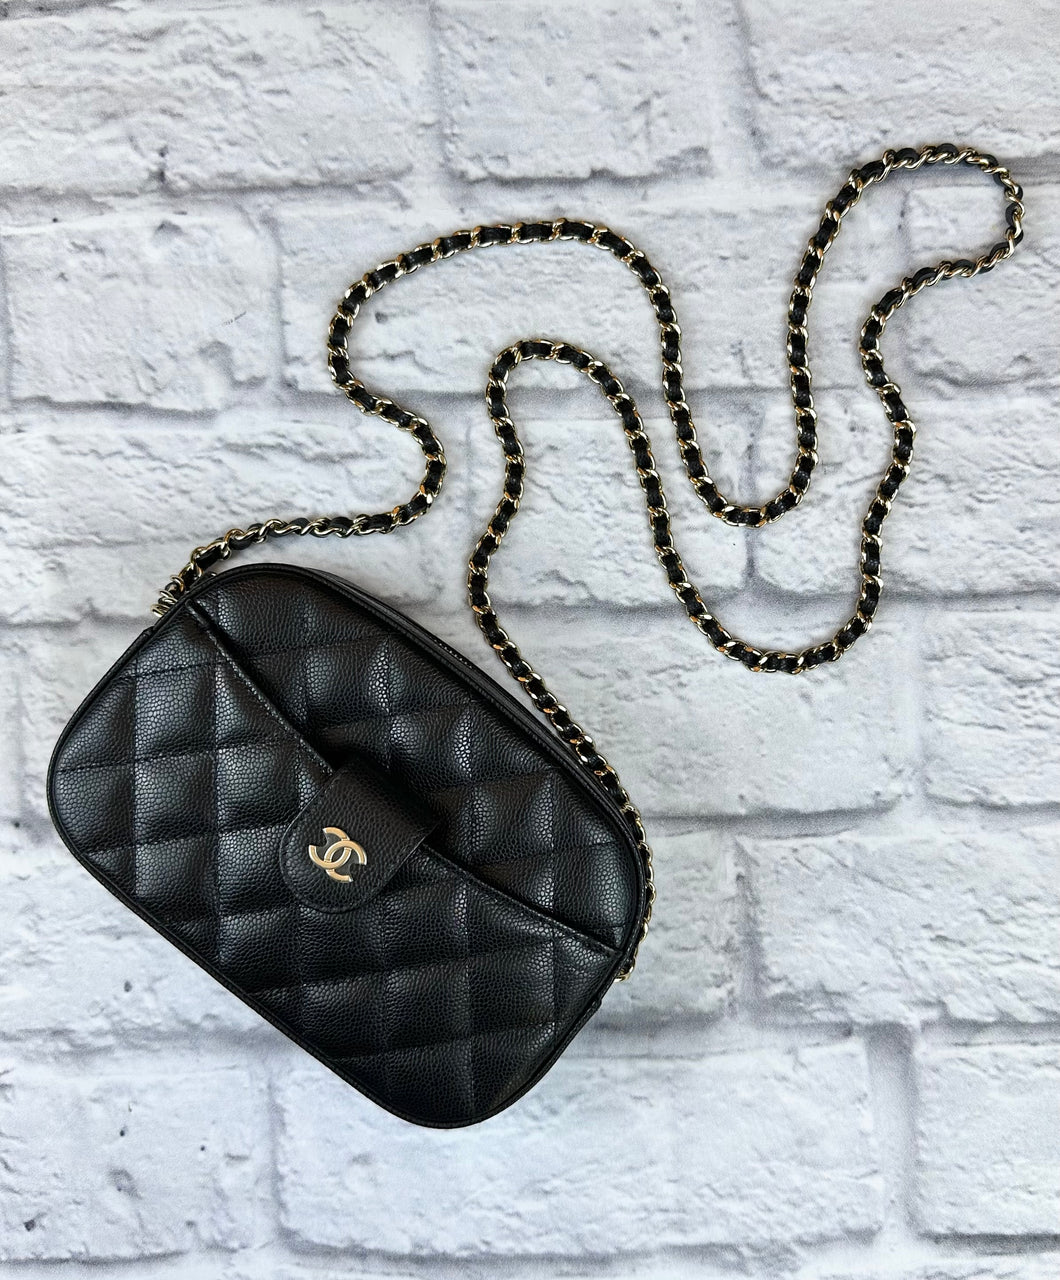 Chanel Black Caviar Camera Bag